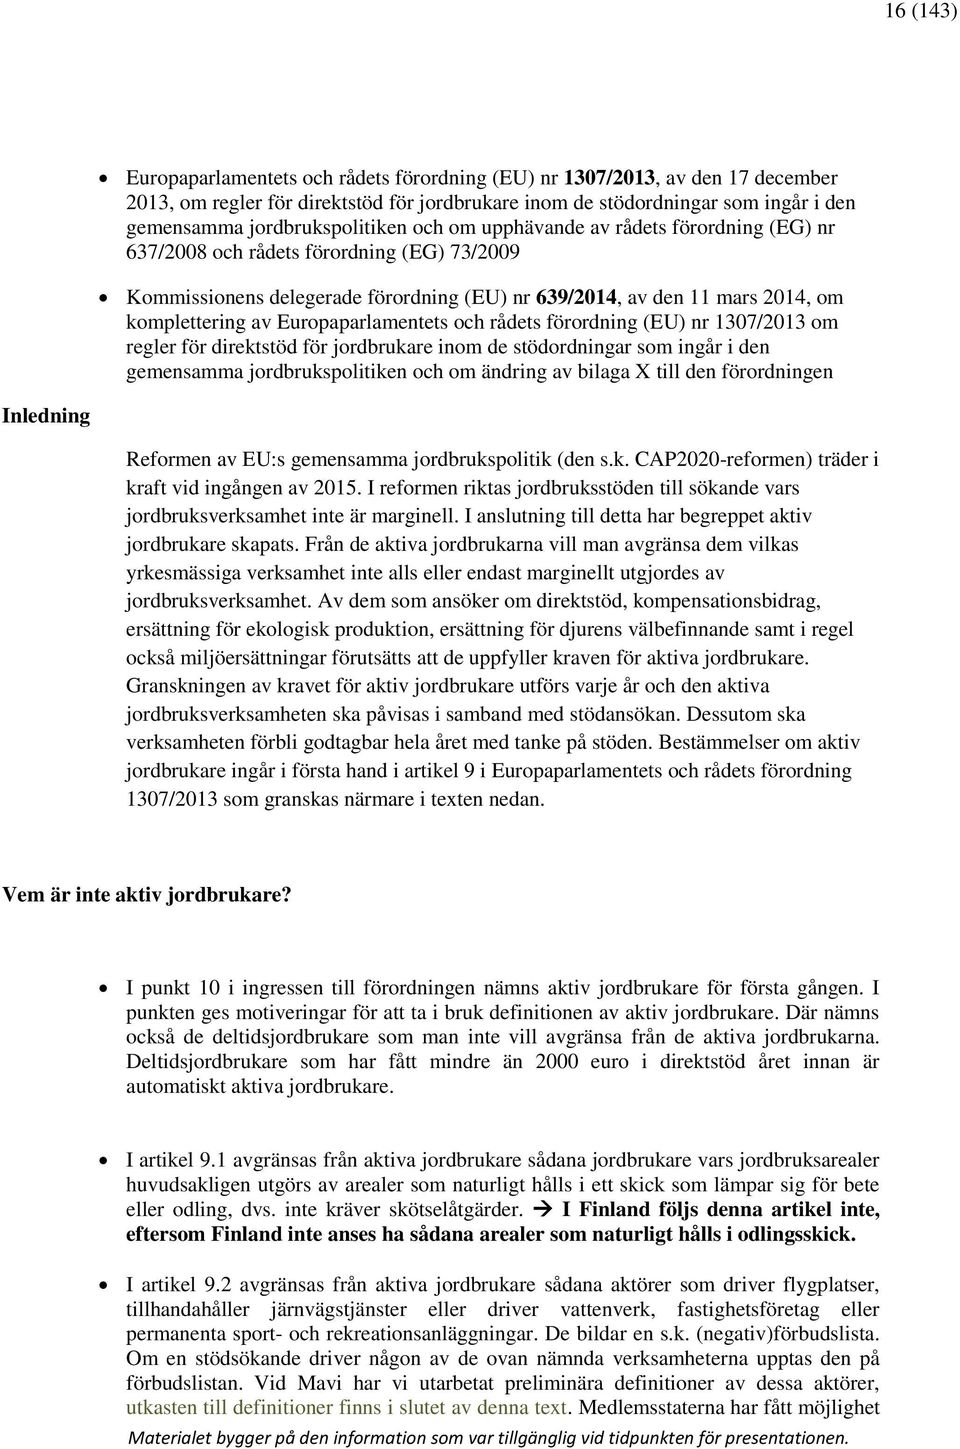 komplettering av Europaparlamentets och rådets förordning (EU) nr 1307/2013 om regler för direktstöd för jordbrukare inom de stödordningar som ingår i den gemensamma jordbrukspolitiken och om ändring